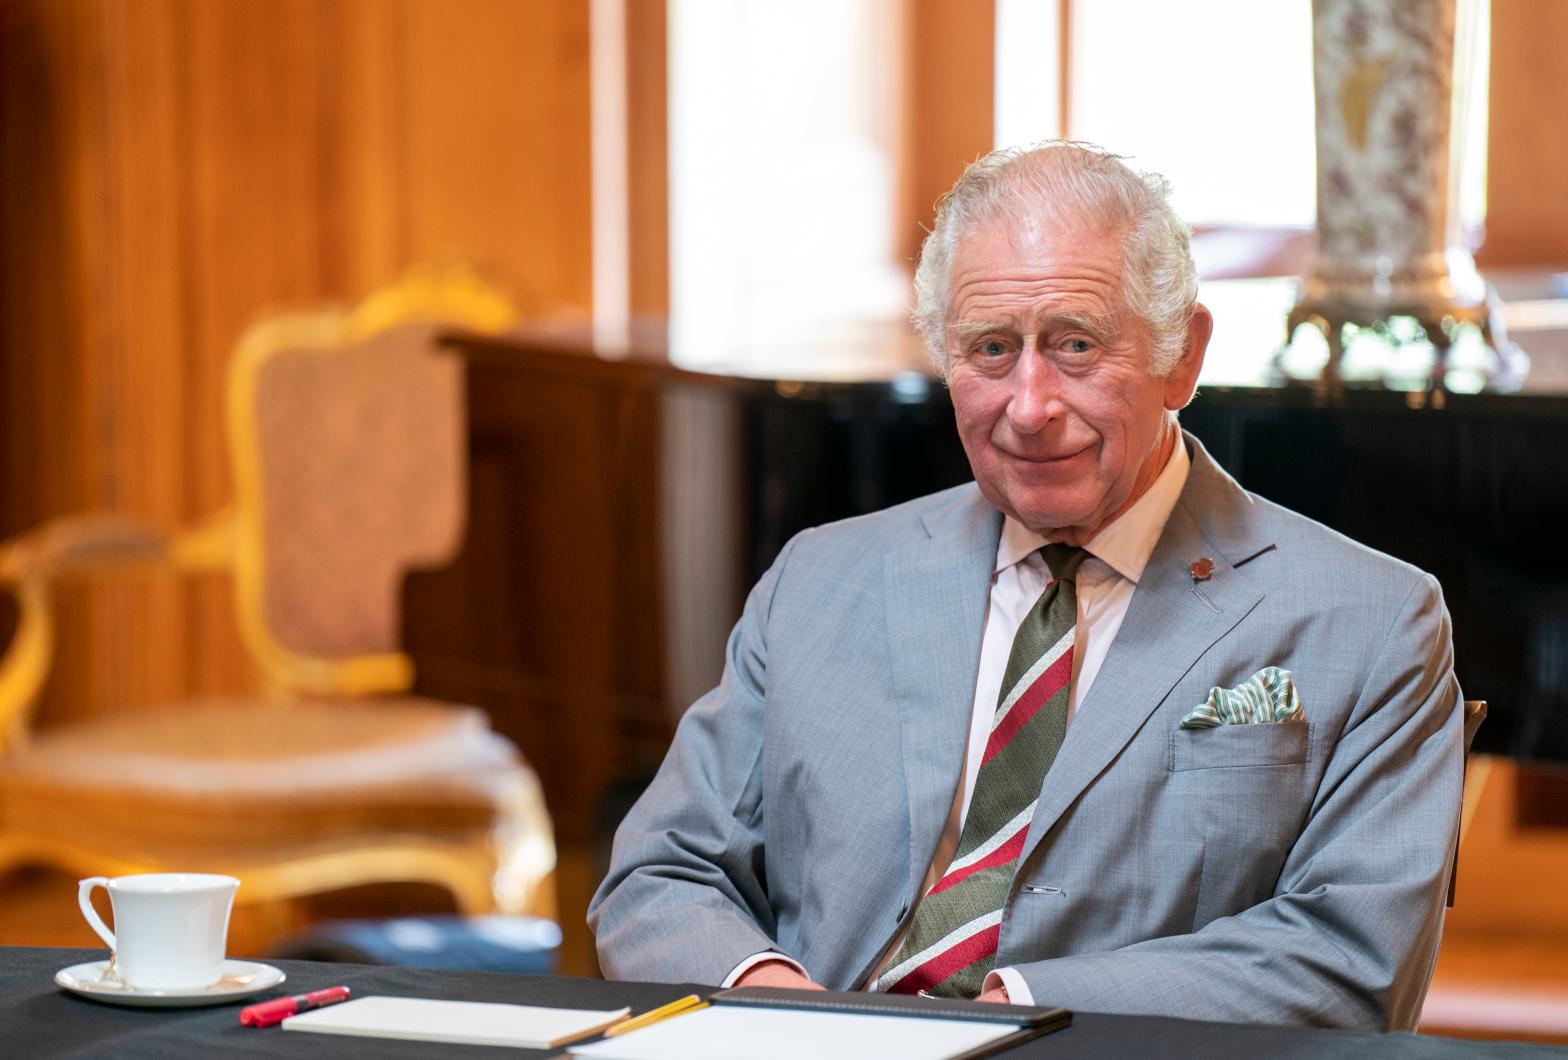 Prince Charles King